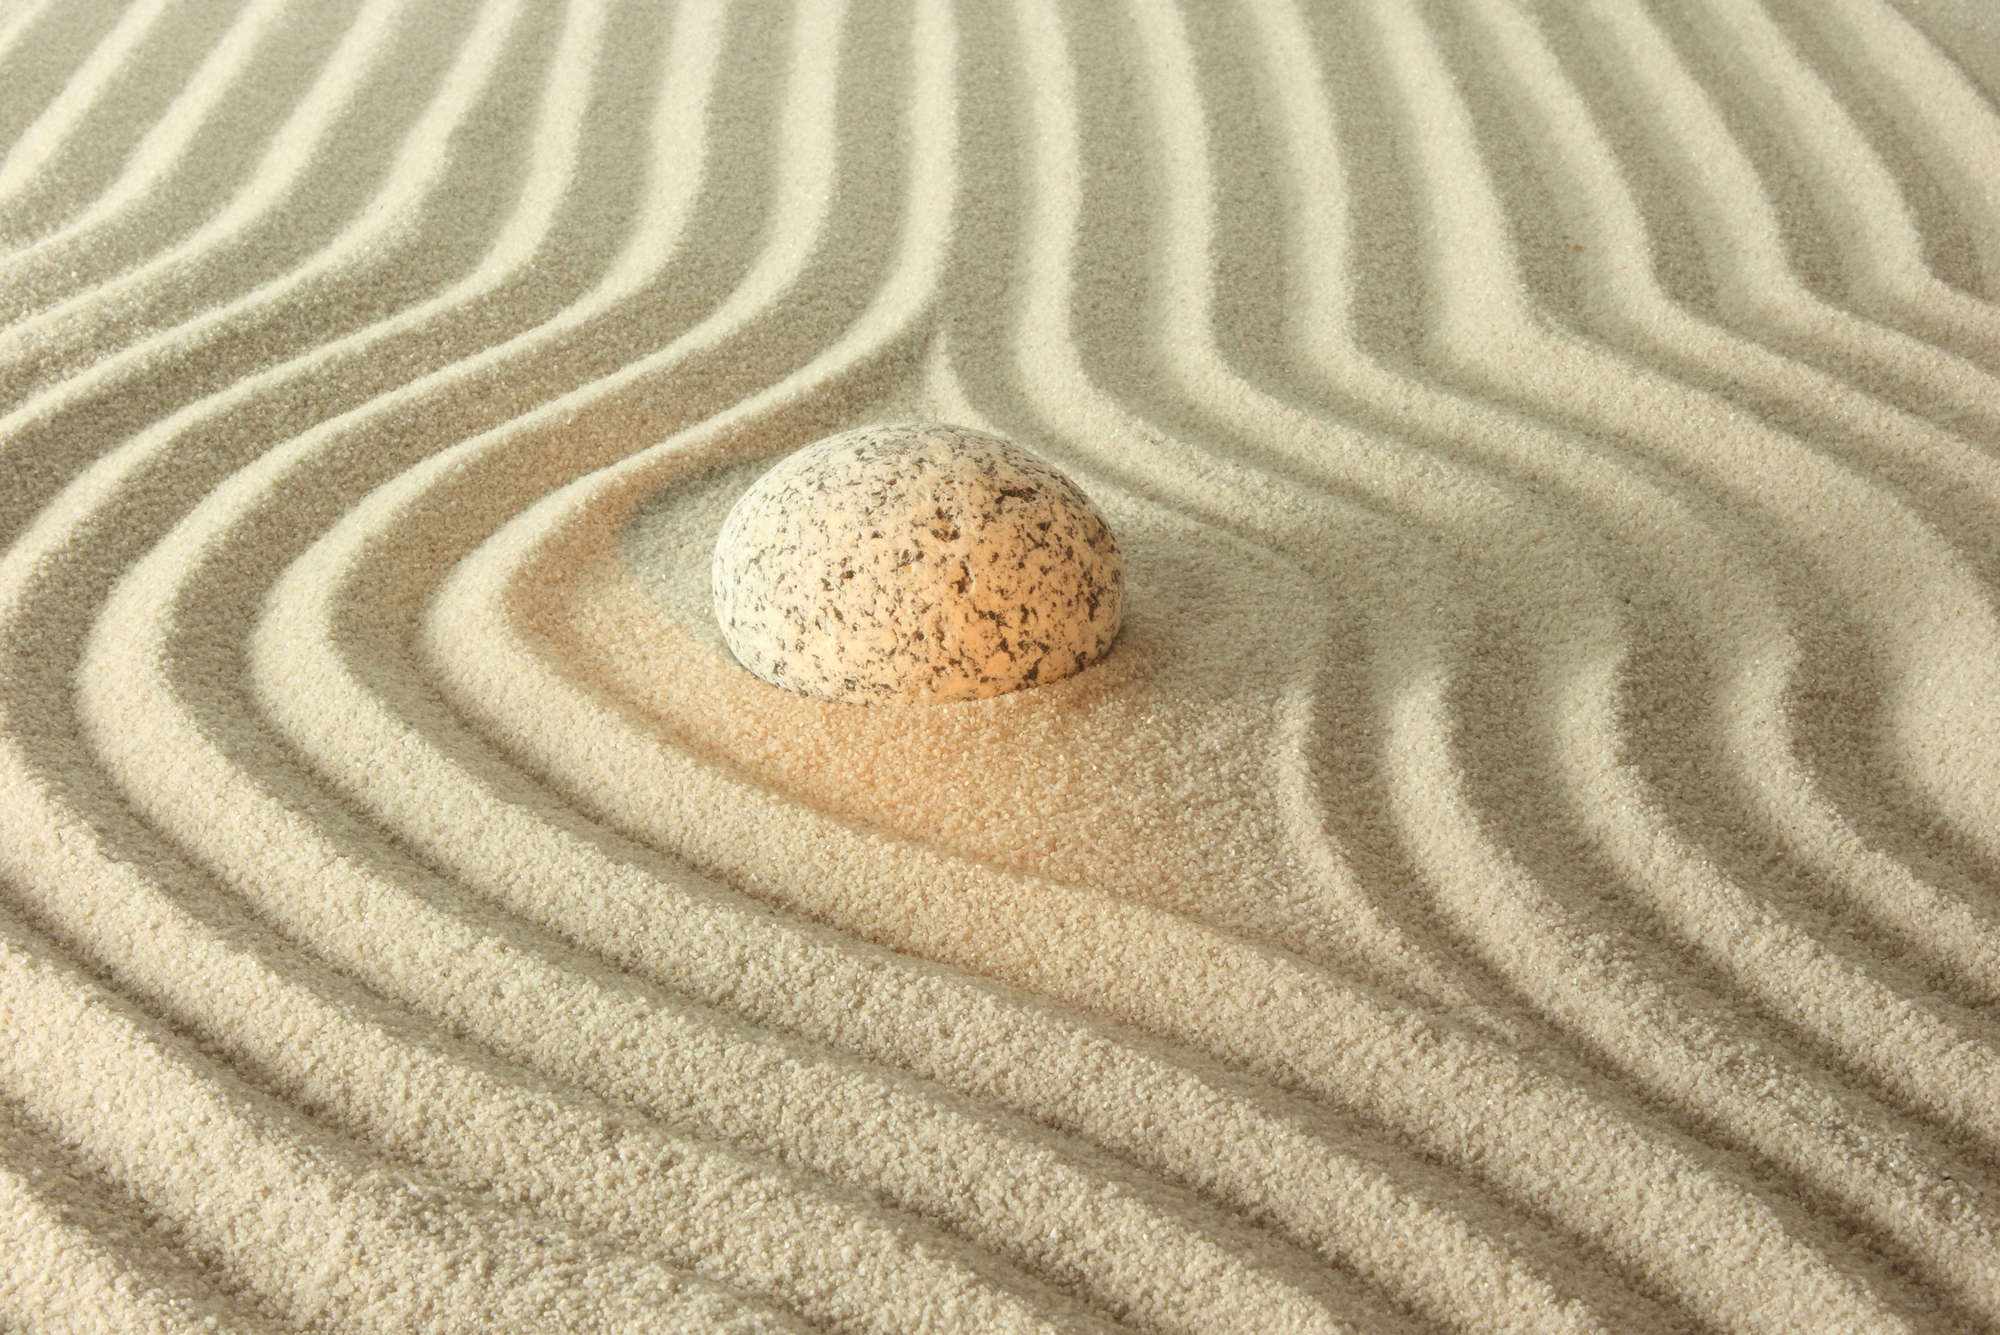             Digital behang gloeiende steen in het zand - structuurvlies
        